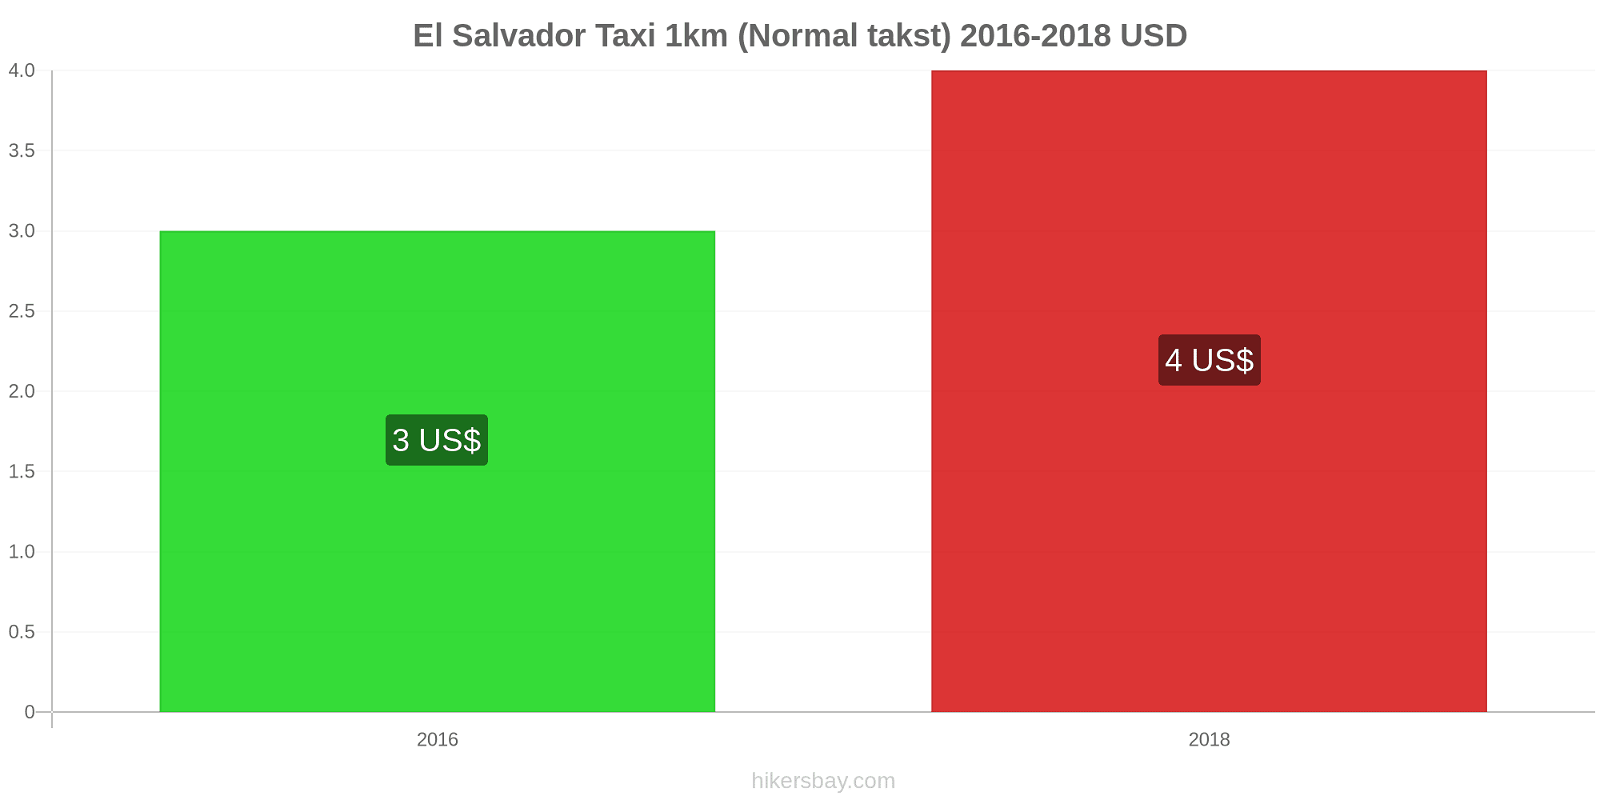 El Salvador prisændringer Taxi 1km (normal takst) hikersbay.com